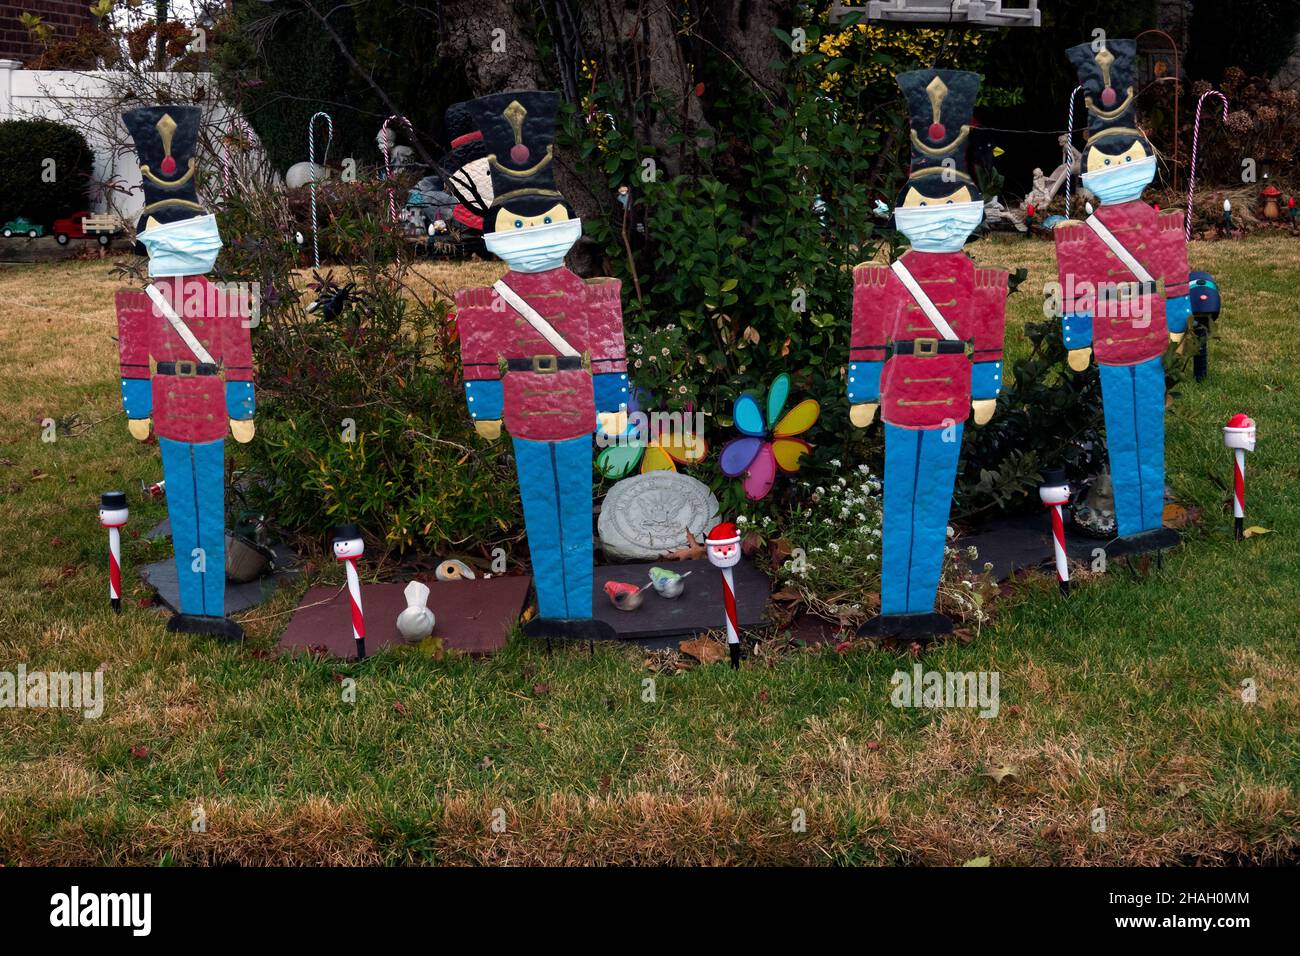 WEIHNACHTEN SPIELZEUG SOLDATEN im Alter von covid, ein Hof ist mit traditionellen Nussknacker Soldaten geschmückt, aber dieses Jahr, trägt Masken. In Queens, NYC. Stockfoto